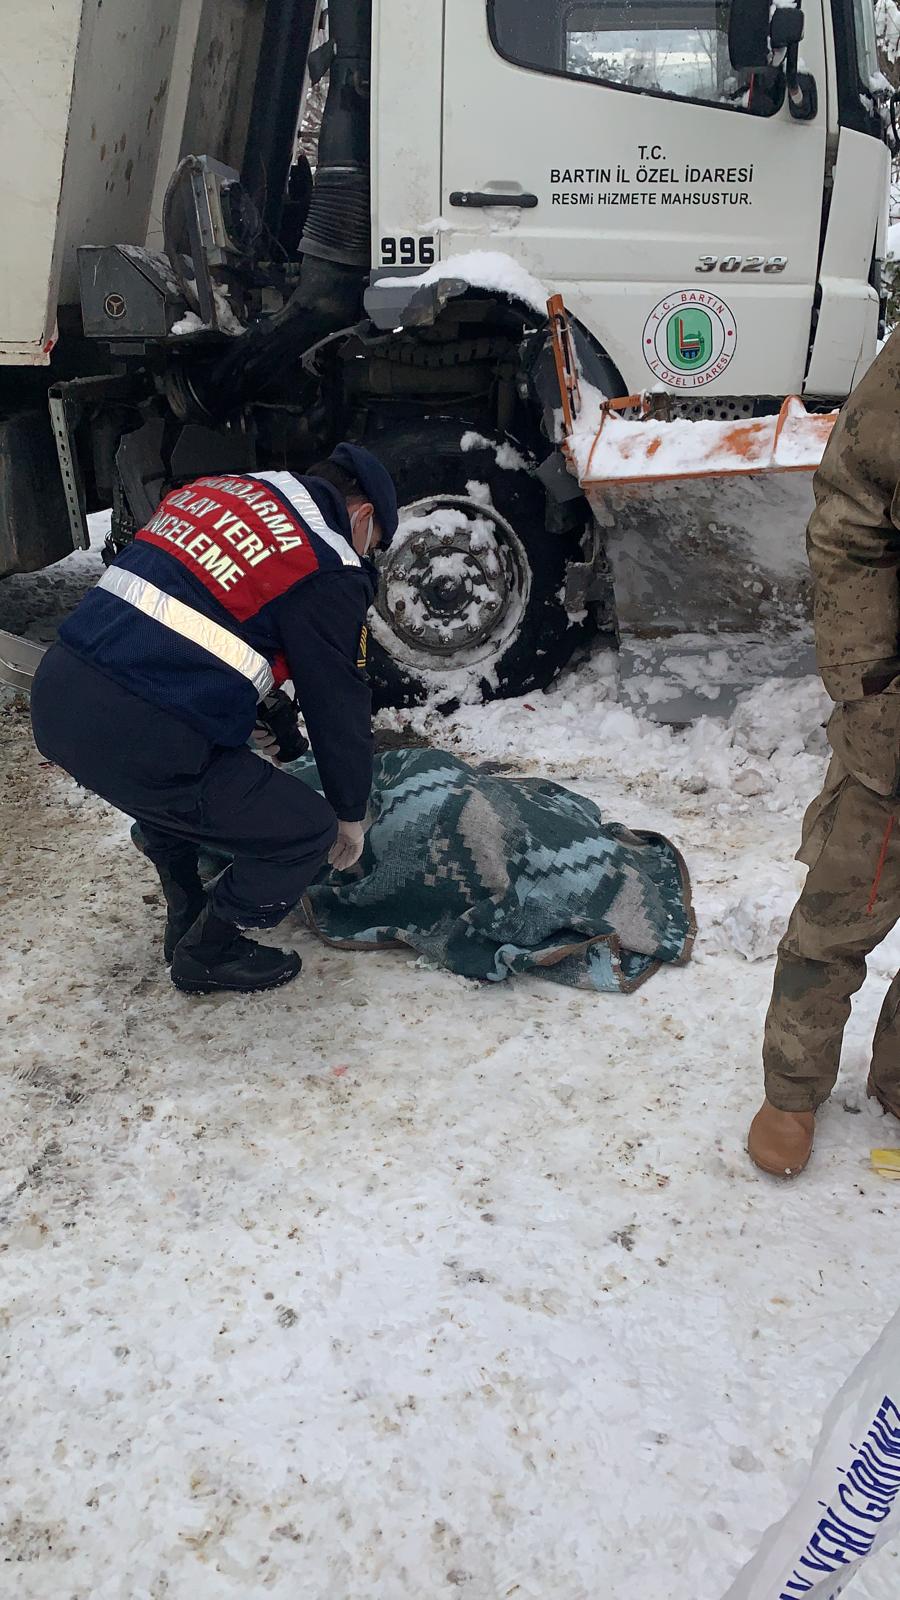 Bartın’da kar küreme kamyonu ile greyder arasında sıkışan kişi öldü